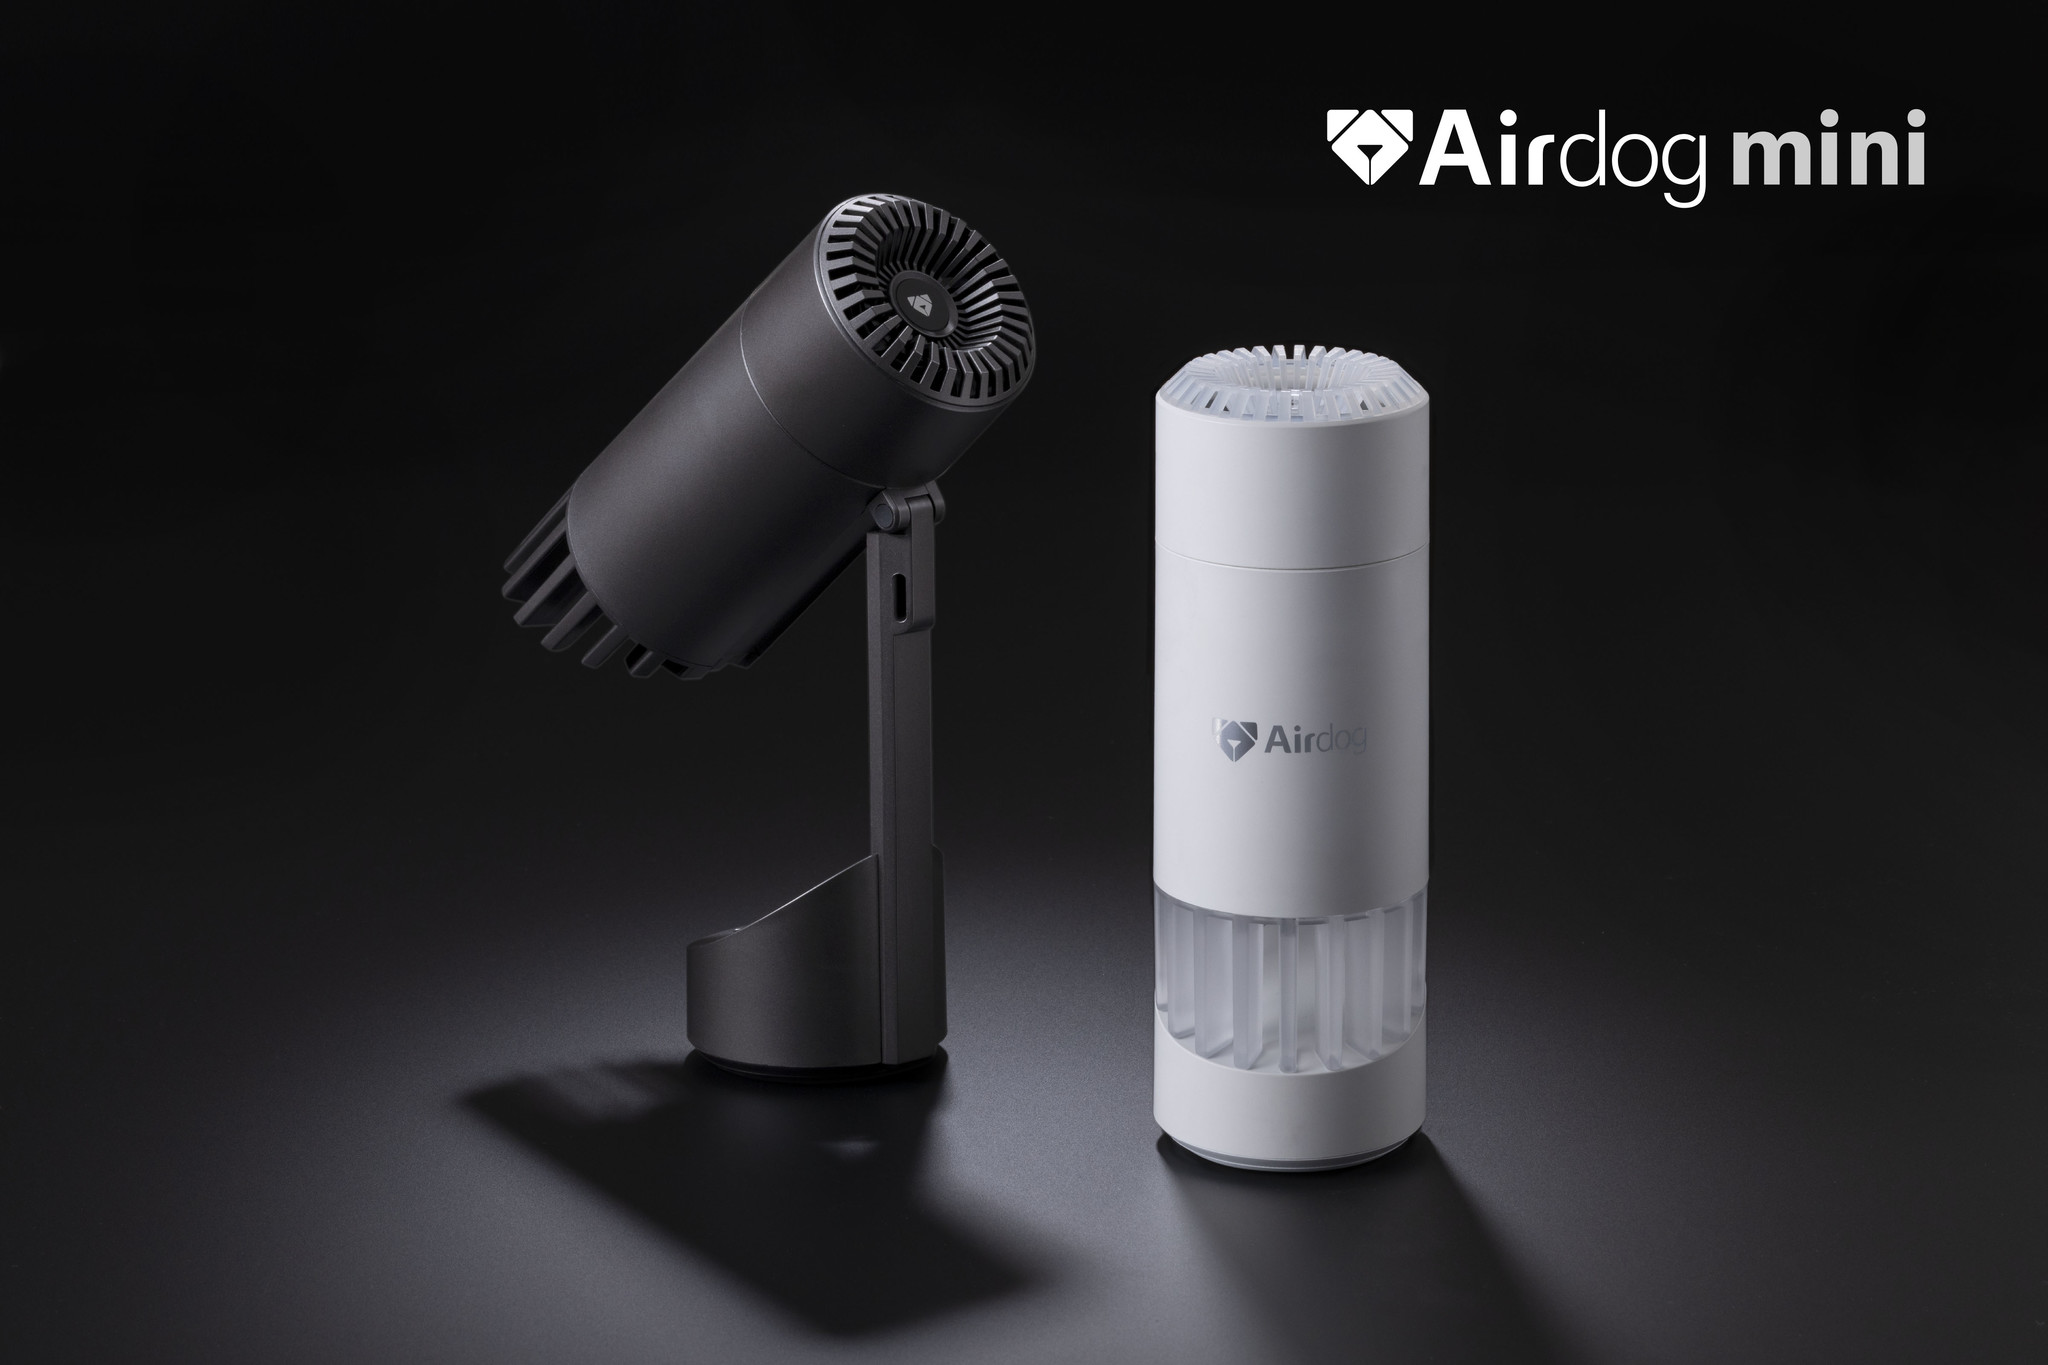 エアドッグミニポータブル Airdogmini portable [新品未開封] - 空気清浄器